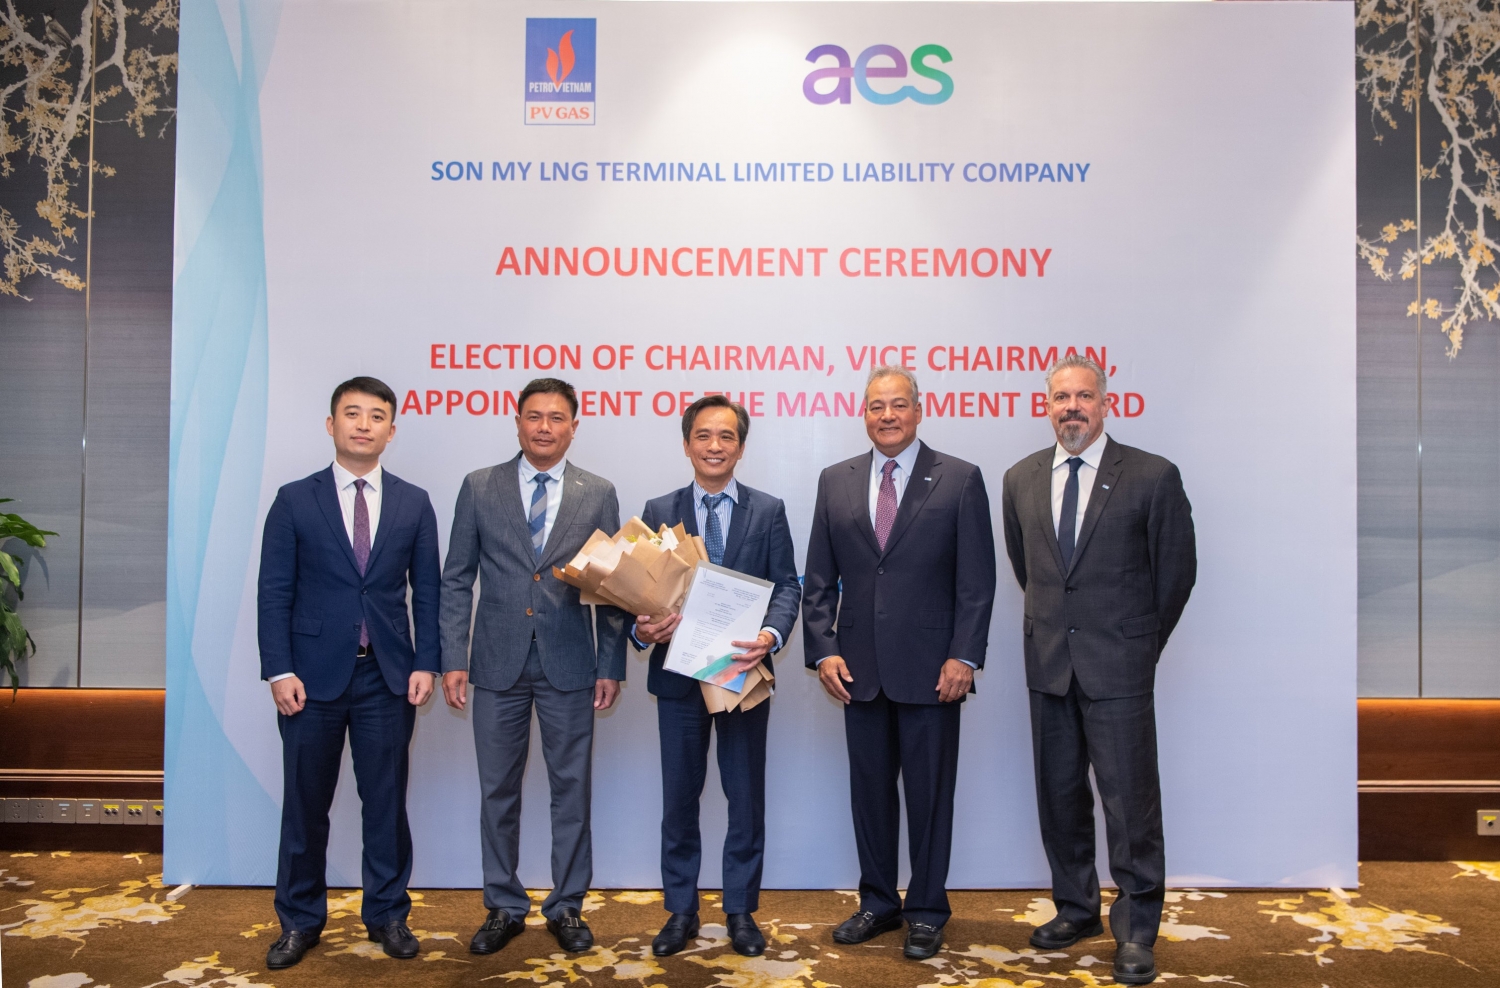 PV GAS và Tập đoàn AES công bố các quyết định nhân sự Công ty TNHH Kho cảng LNG Sơn Mỹ”